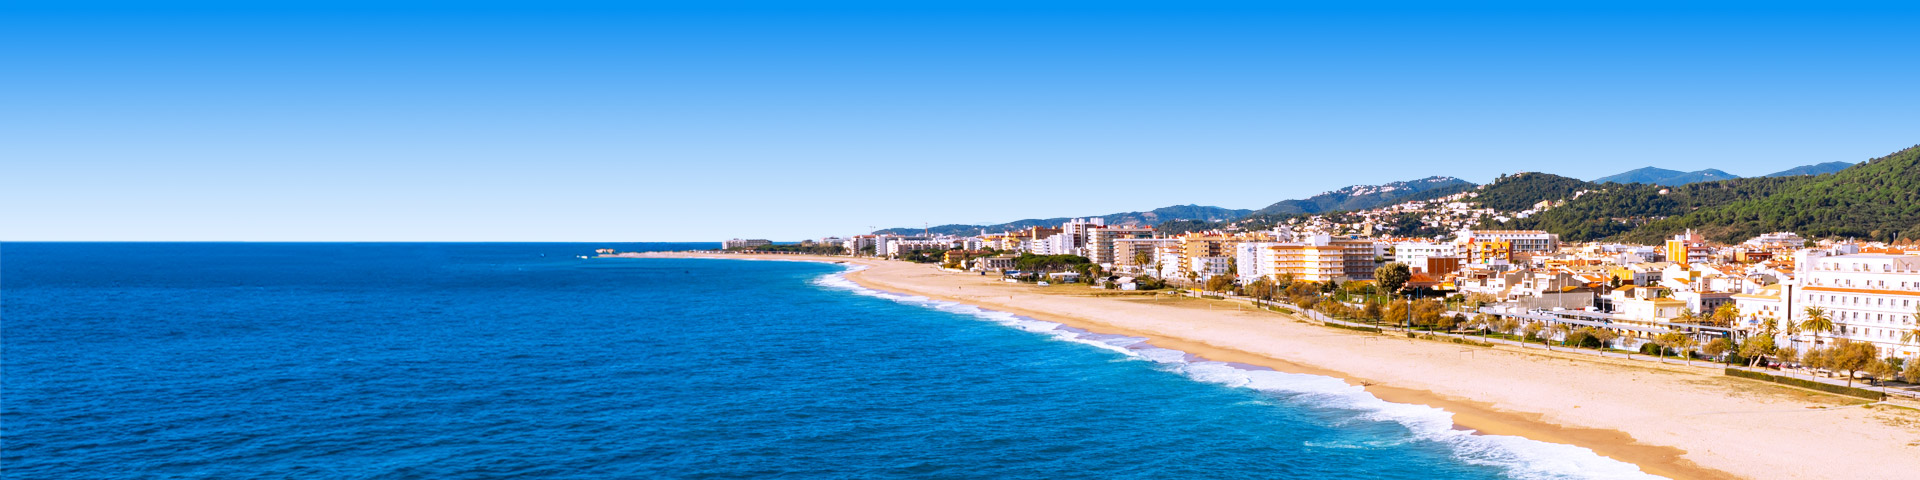 Kustlijn met strand, hotels en groene heuvels bij Malgrat de Mar